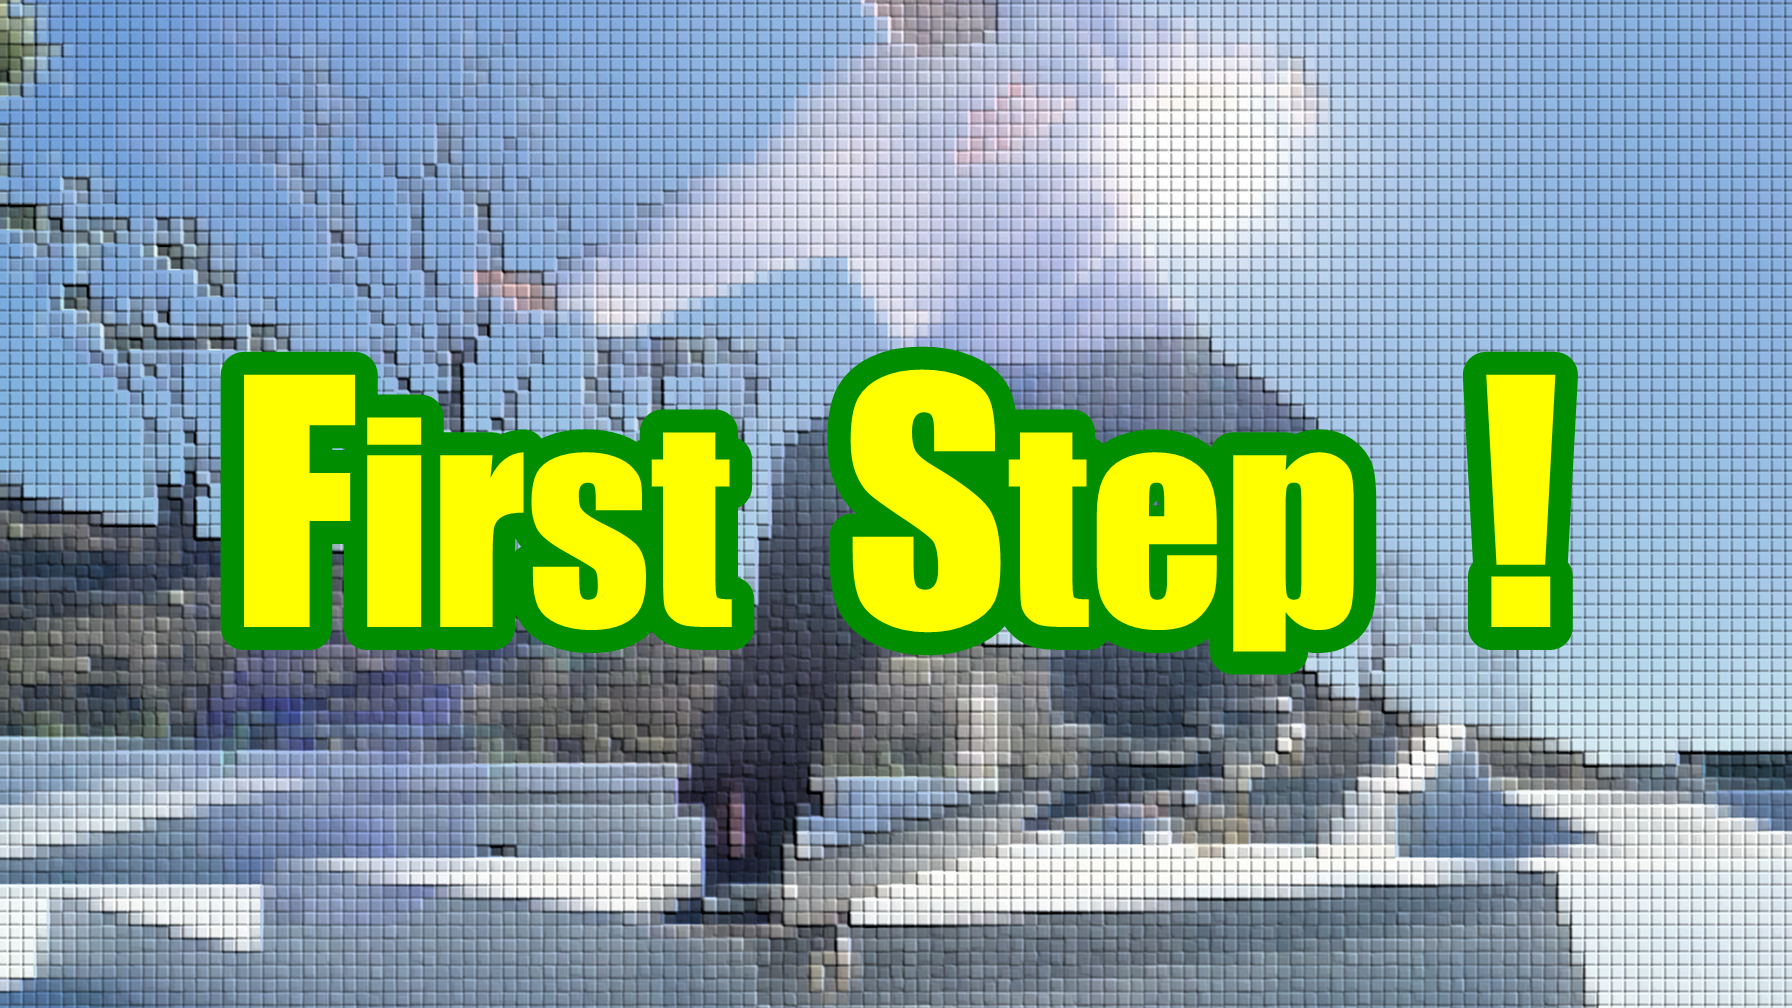 スケートボード教室【First Step !】